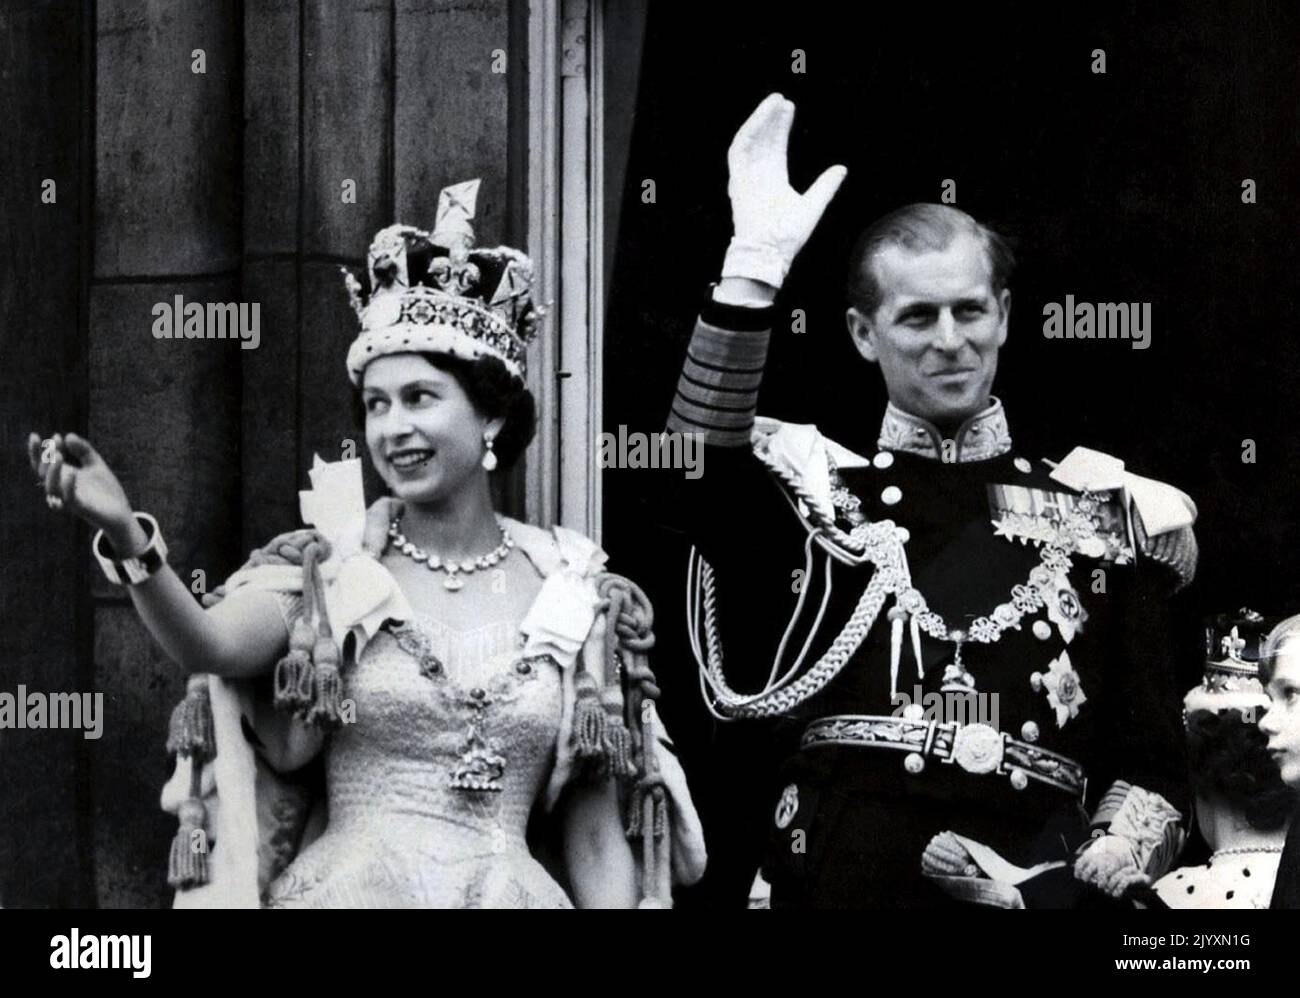 Datei-Foto vom 02/06/53 des Herzogs von Edinburgh mit Königin Elizabeth II., die nach ihrer Krönung vom Balkon zu den schauenden Massen um die Tore des Buckingham Palace winkte. Ausgabedatum: Donnerstag, 8. September 2022. Stockfoto